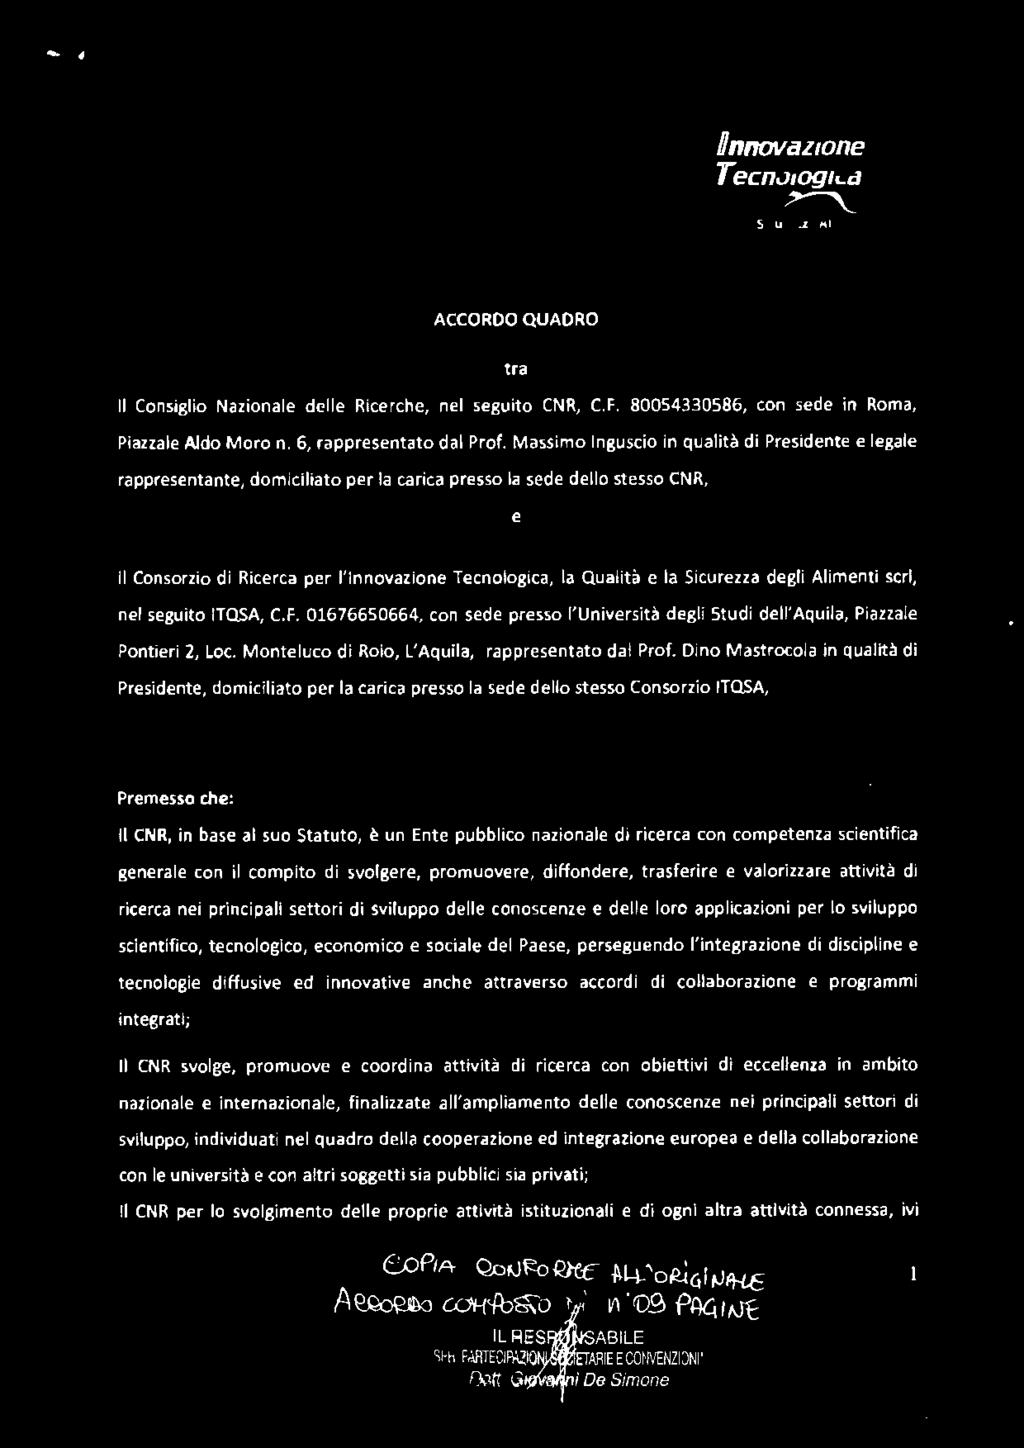 Sicurezza degli Alimenti seri, nel seguito ITQSA, C.F. 01676650664, con sede presso l'università degli Studi dell'aquila, Piazzale Pontieri 2, Loc. Monteluco di Rolo, L'Aquila, rappresentato dal Prof.